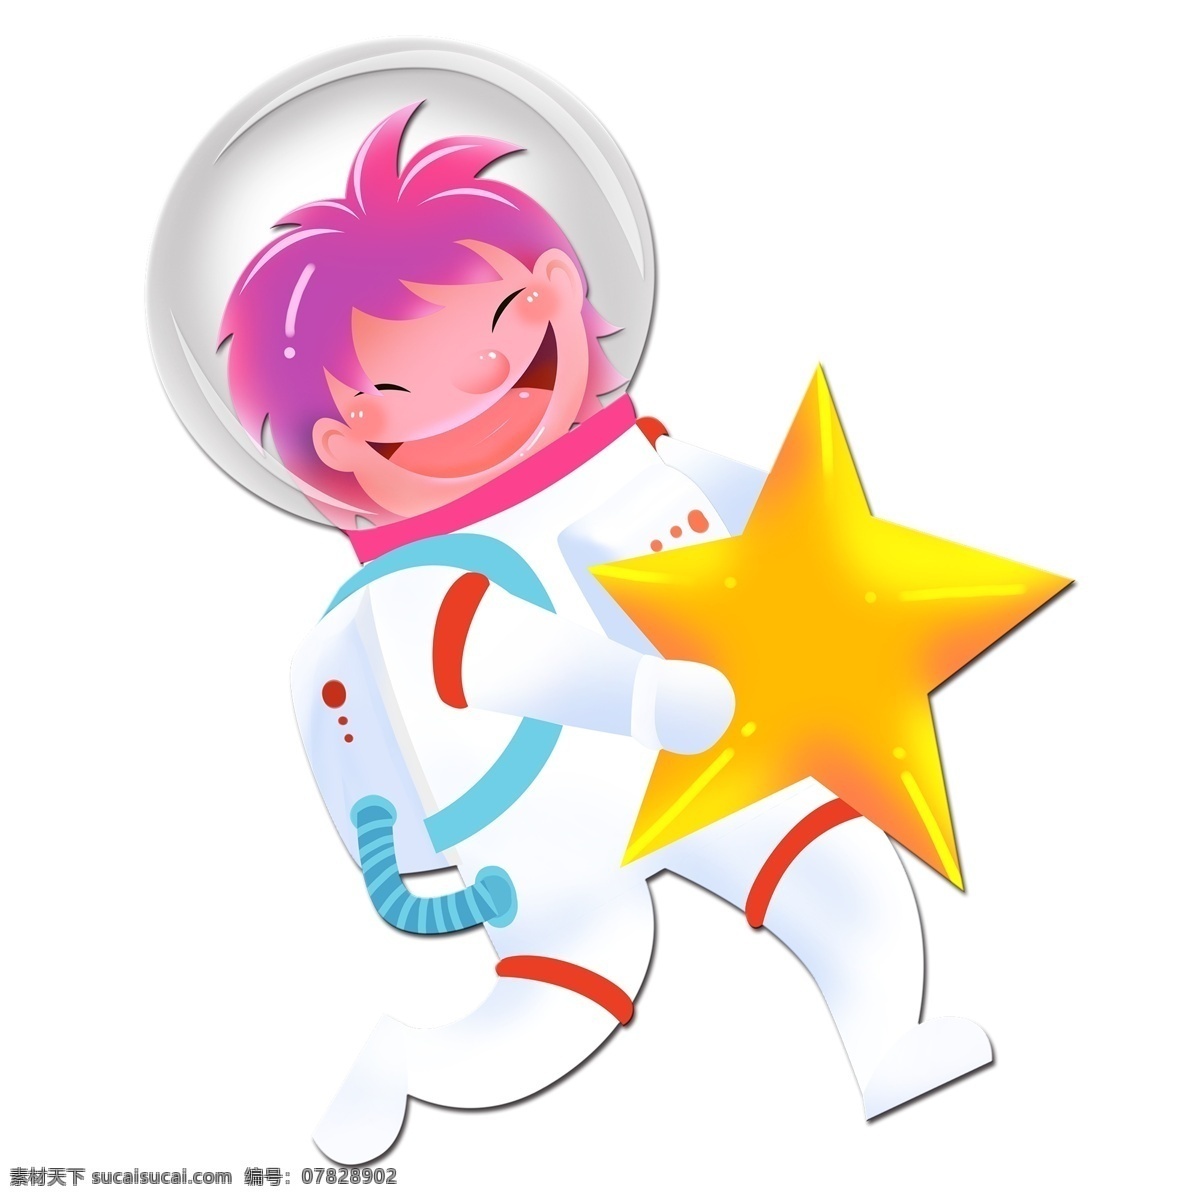 手绘 宇航员 卡通 可爱 人物 元素 人物插画 精致人物 手绘元素 时尚 宇宙员 设计元素